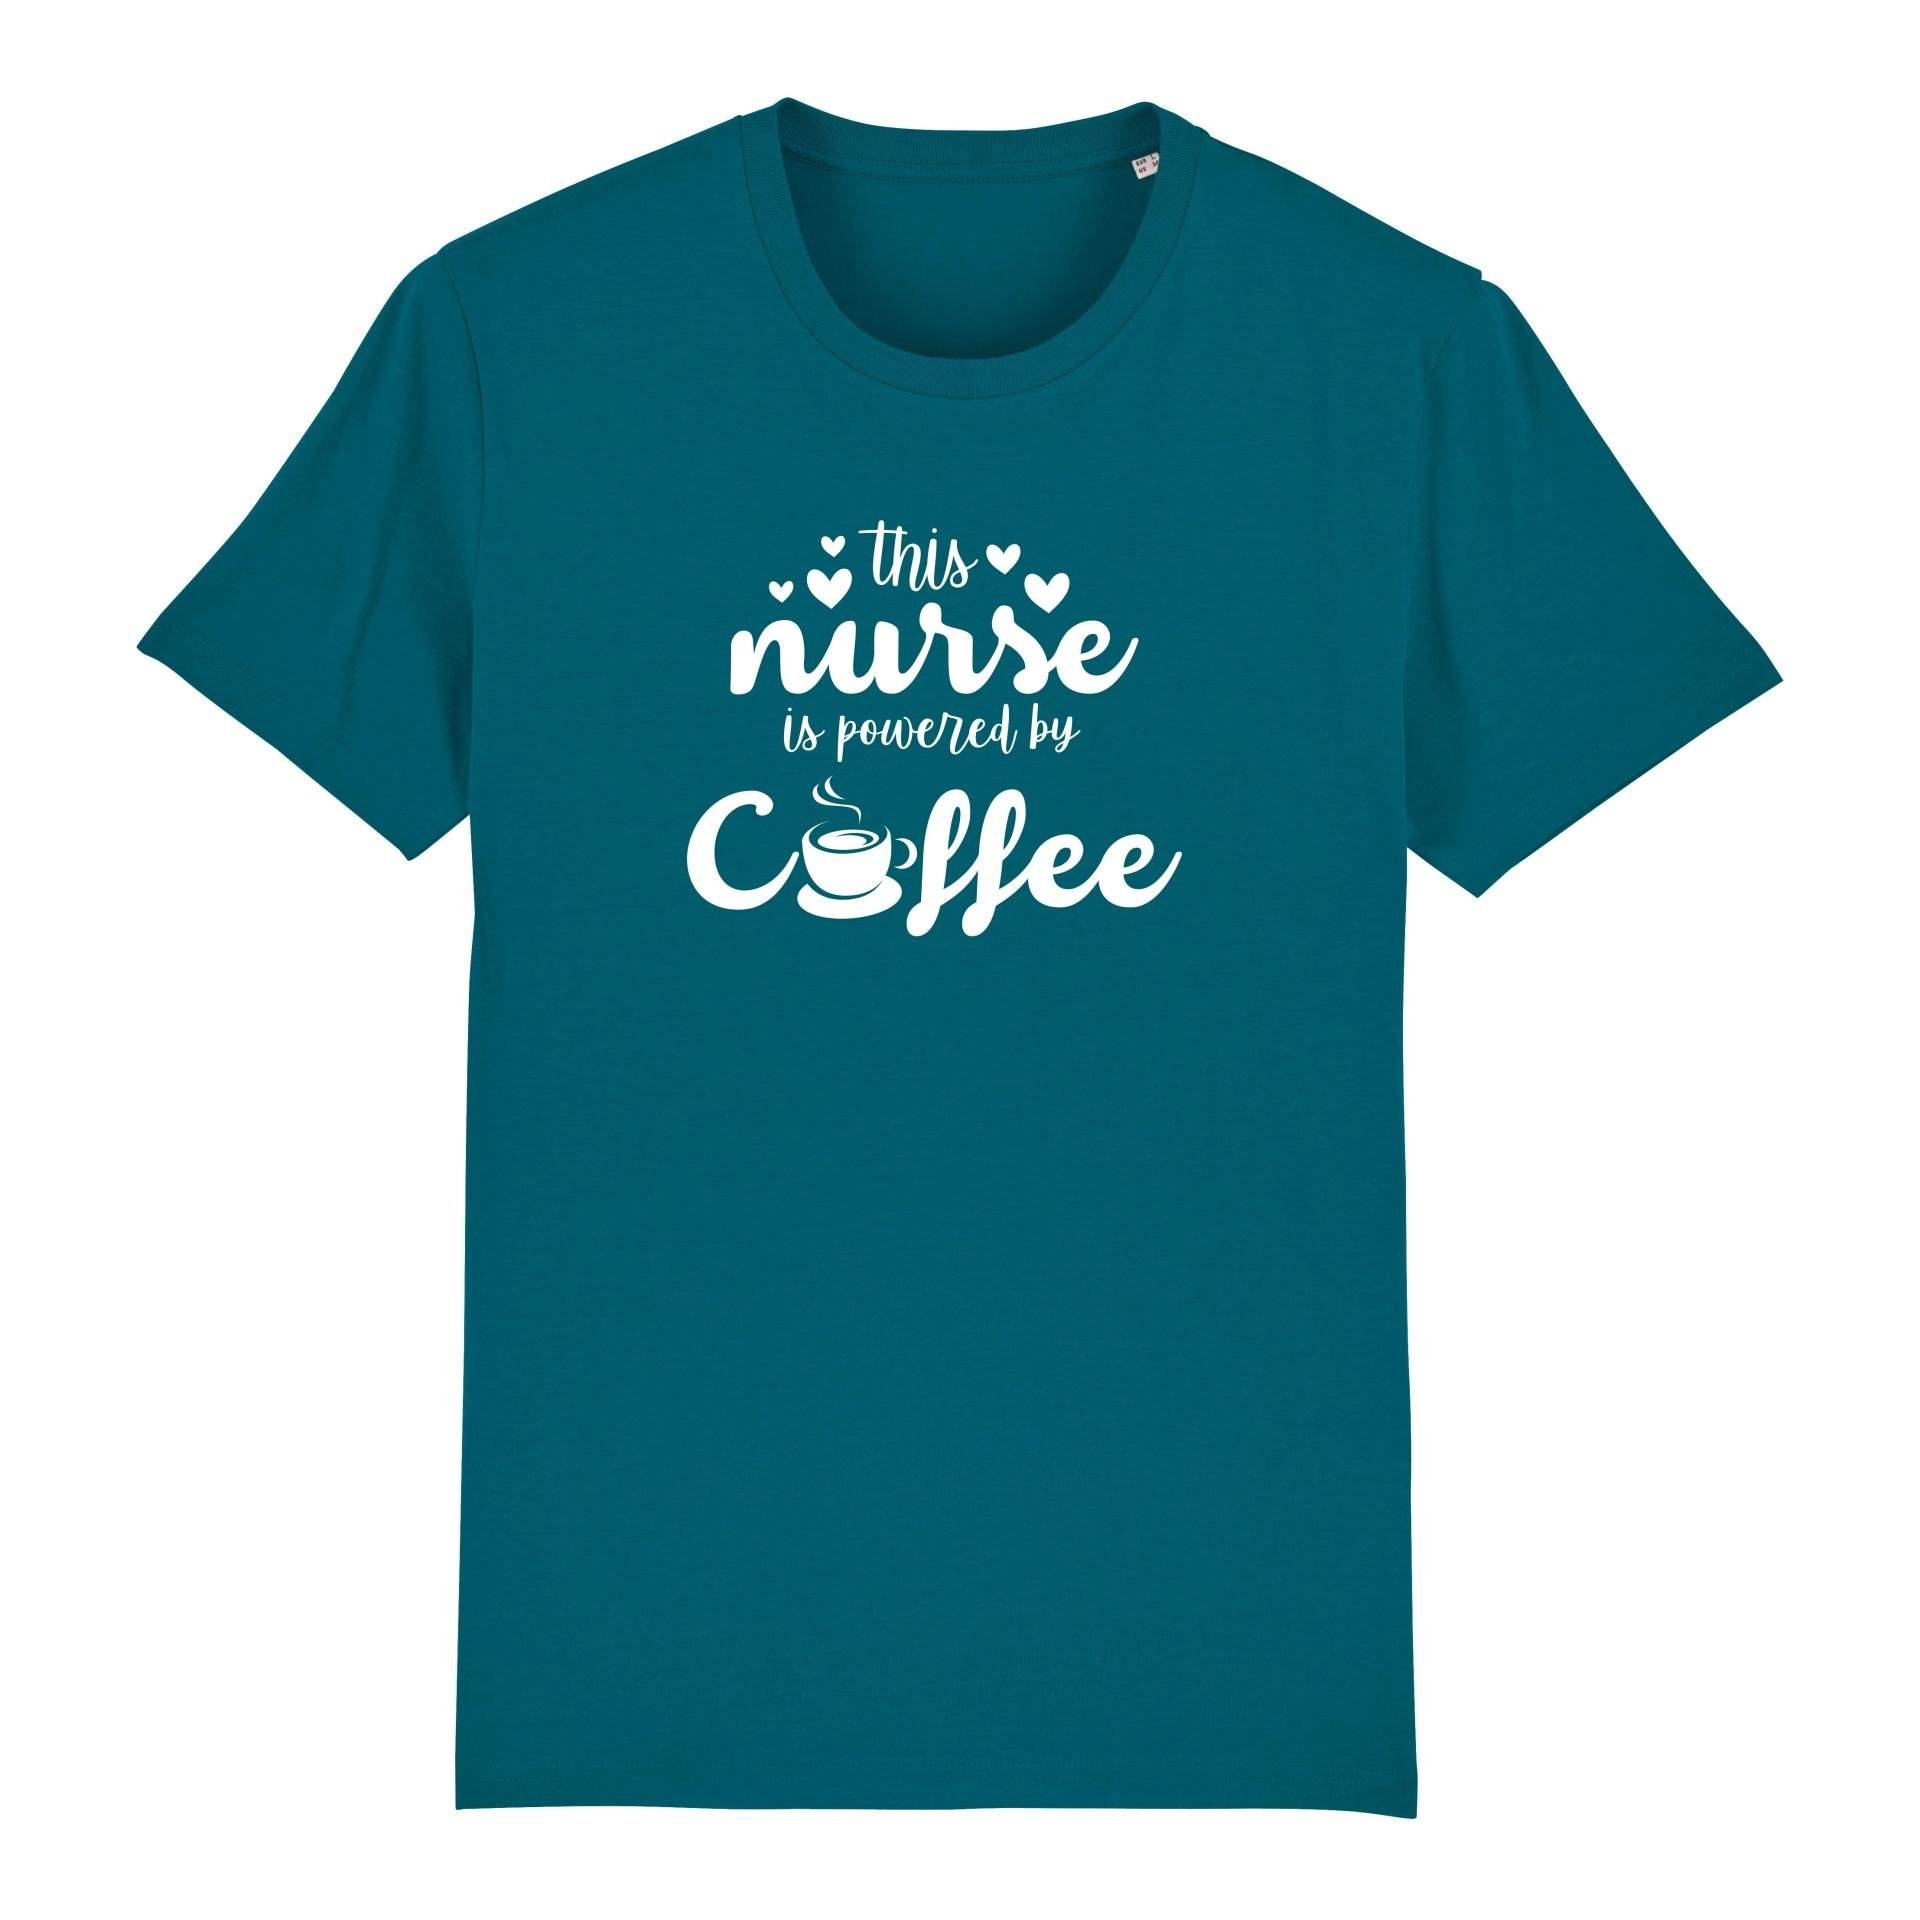 Schwesternuhr This nurse is powered by coffee Bio T-Shirt Unisex Farbe: Ocean Depth, Grösse: XXL von Schwesternuhr